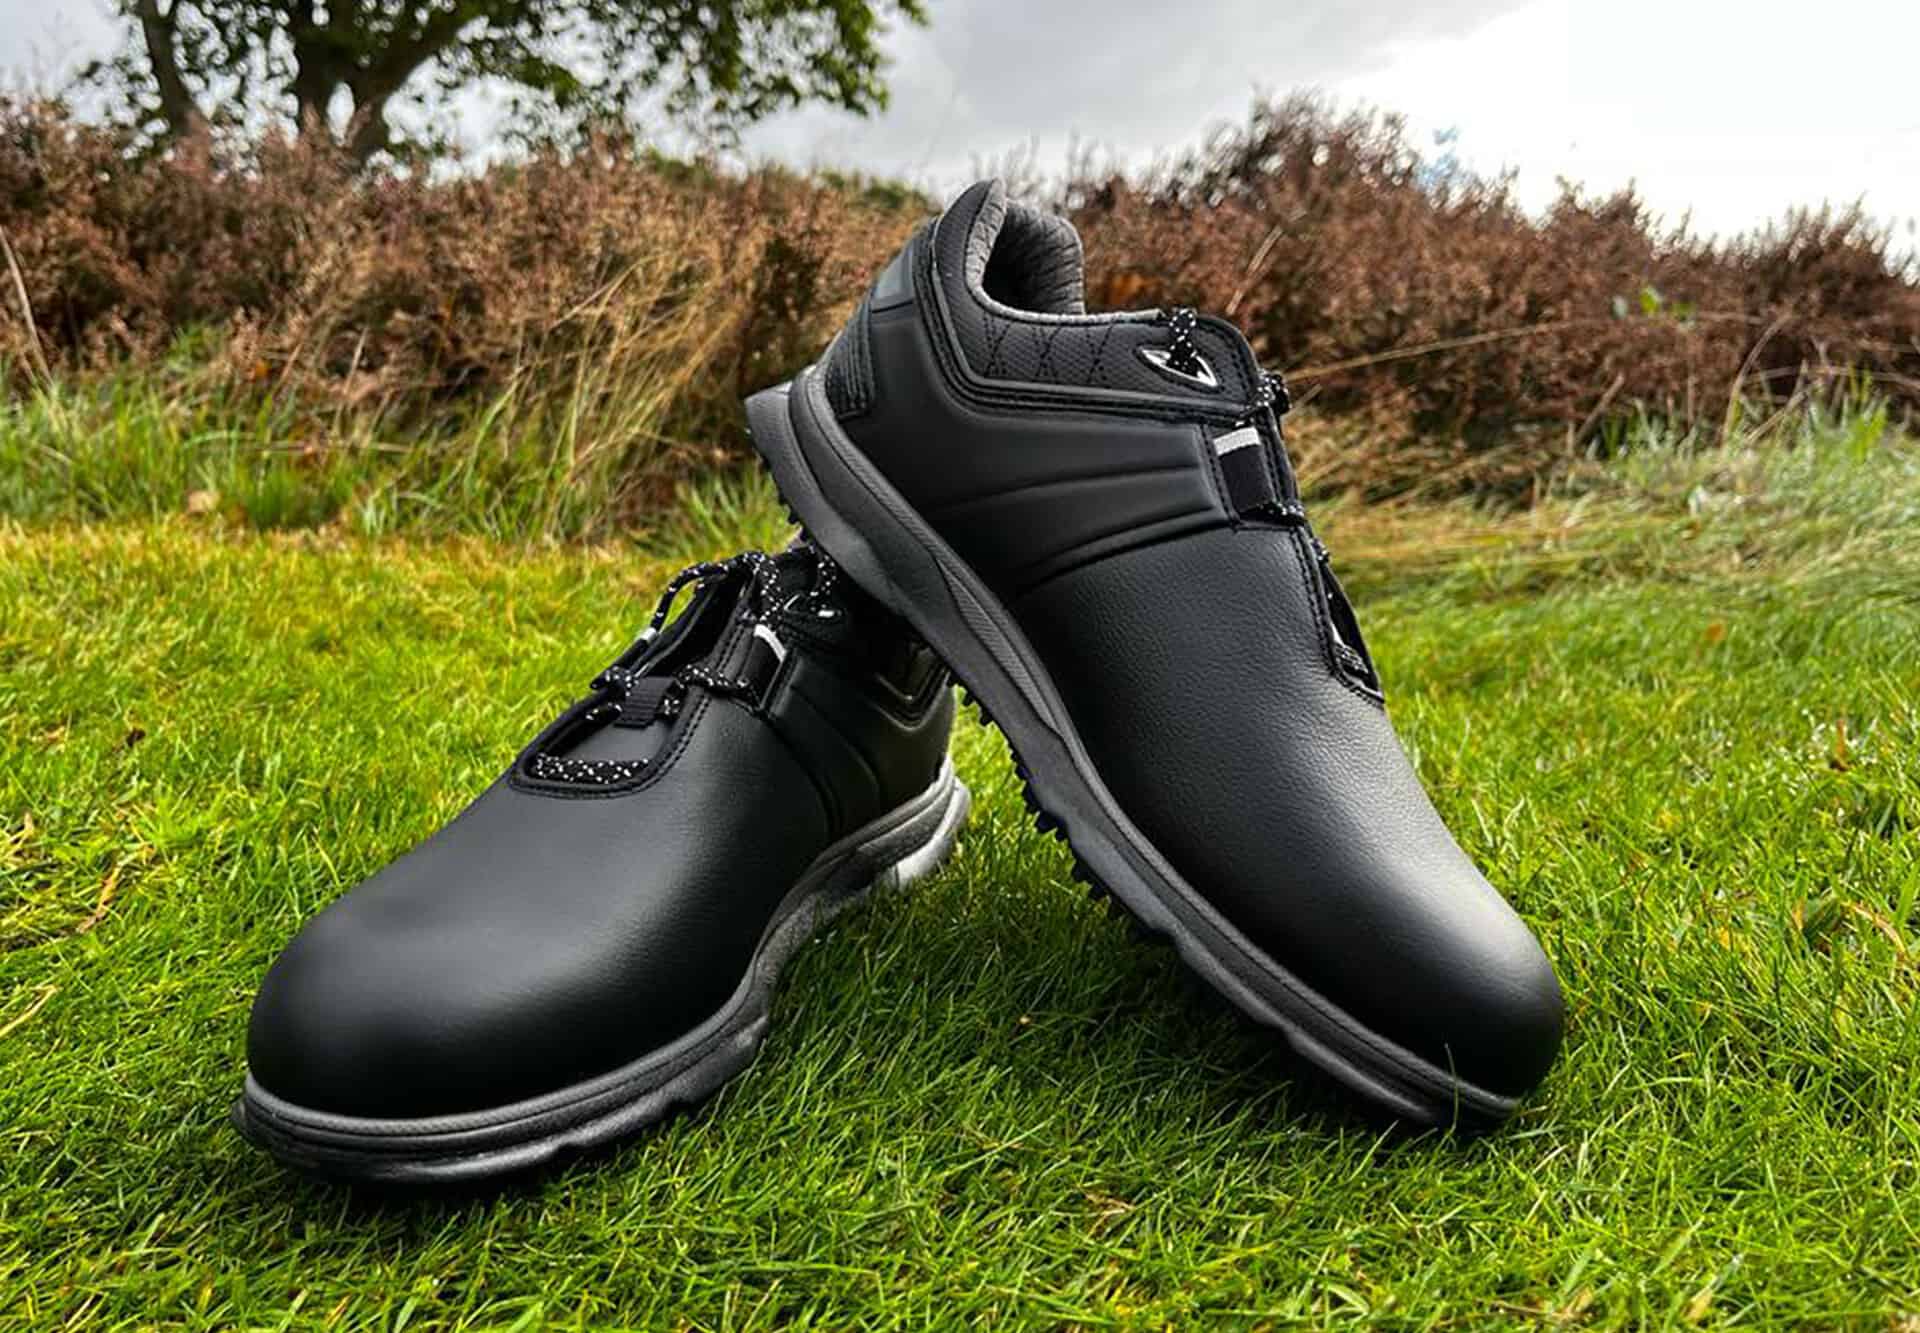 FootJoy Pro SL Carbon golf shoes review